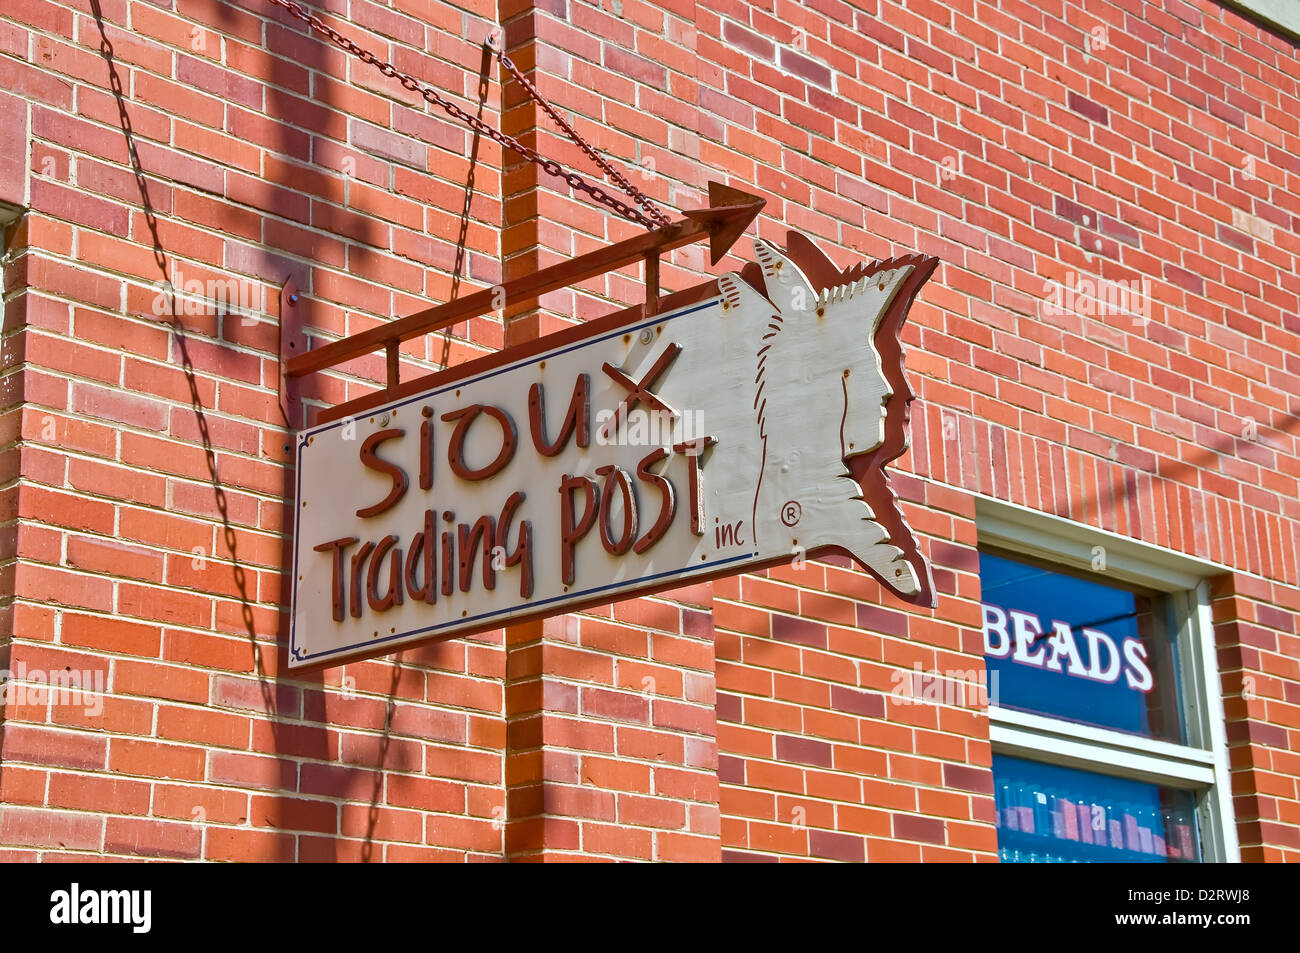 Sioux Trading Post signe sur l'extérieur du bâtiment en brique souvenir dans Rapid City Banque D'Images